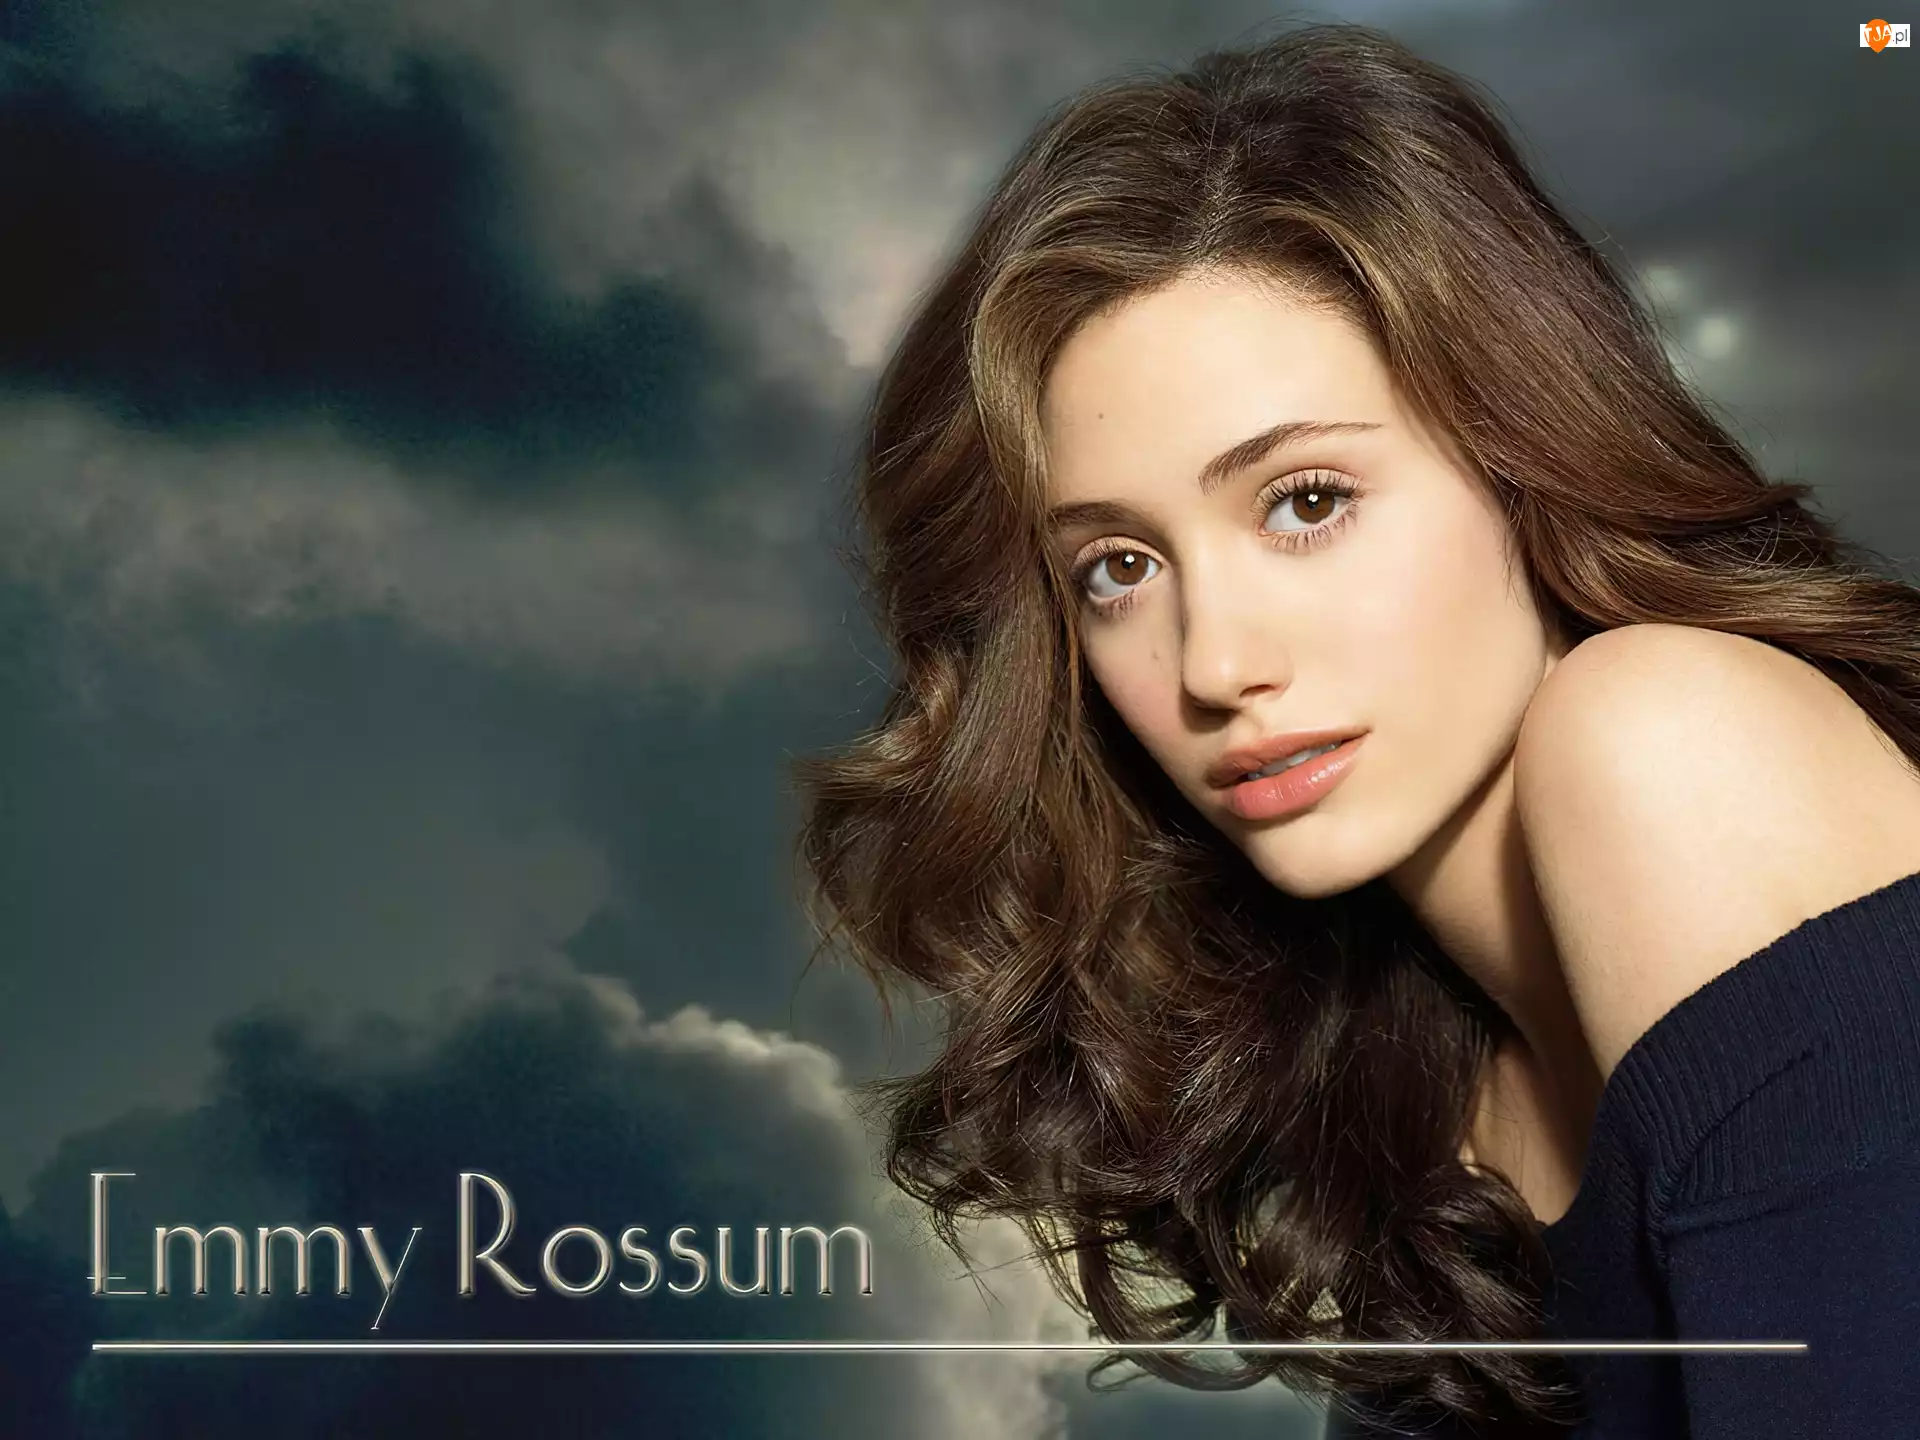 Emmy Rossum